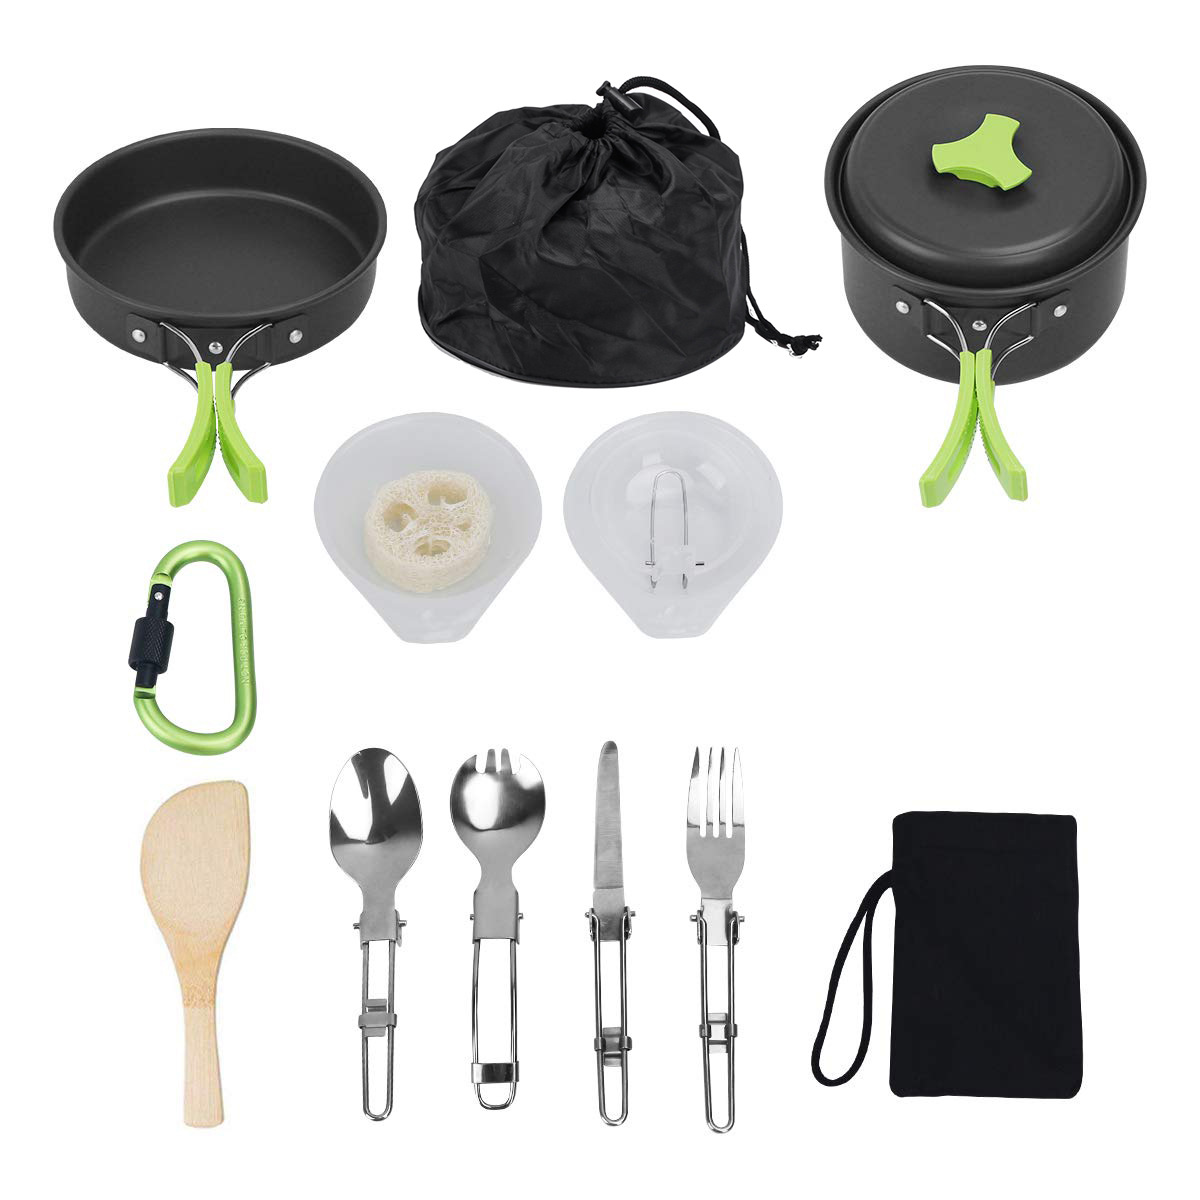 Portable-14pcs-Outdoor-Camping-Cookware-Set-Hiking-Cooking-Pot-Pan-Picnic-Set-AU-1935459-3